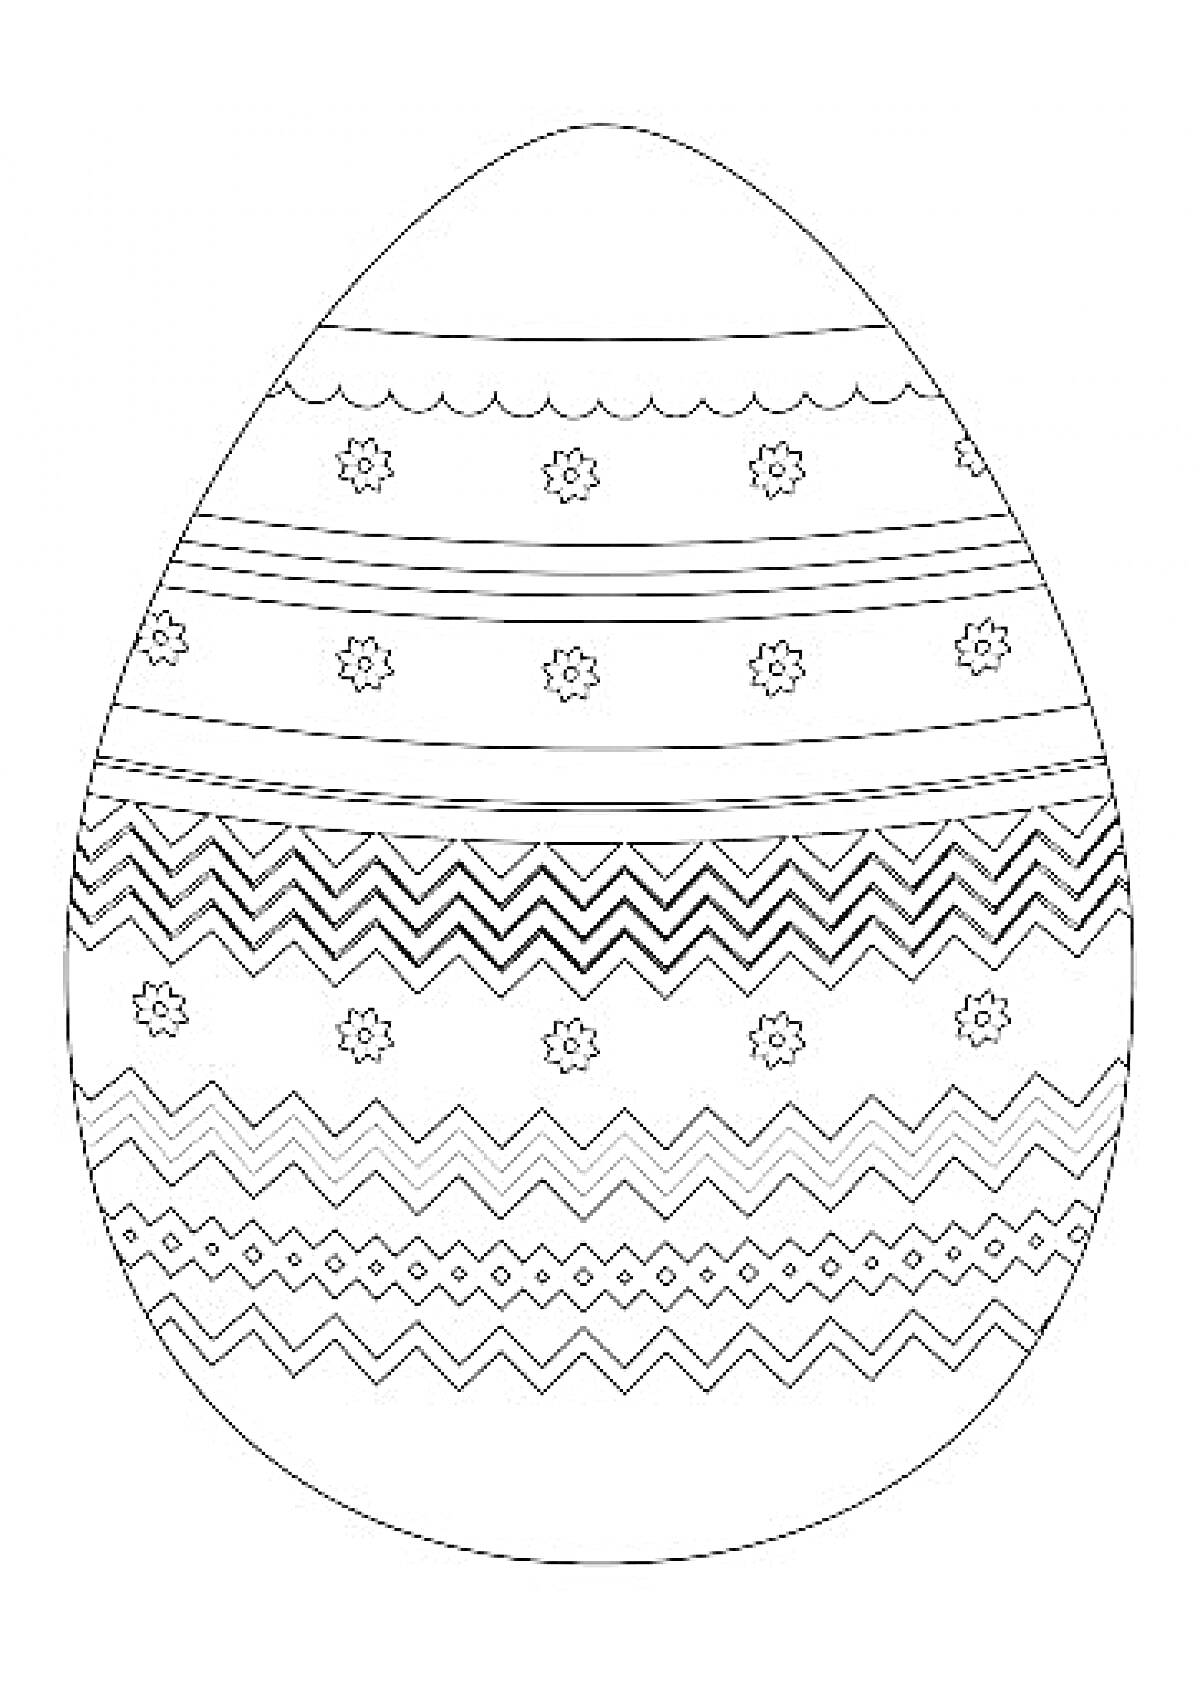 Раскраска Пасхальное яйцо с цветочными узорами, волнистыми линиями и зигзагами